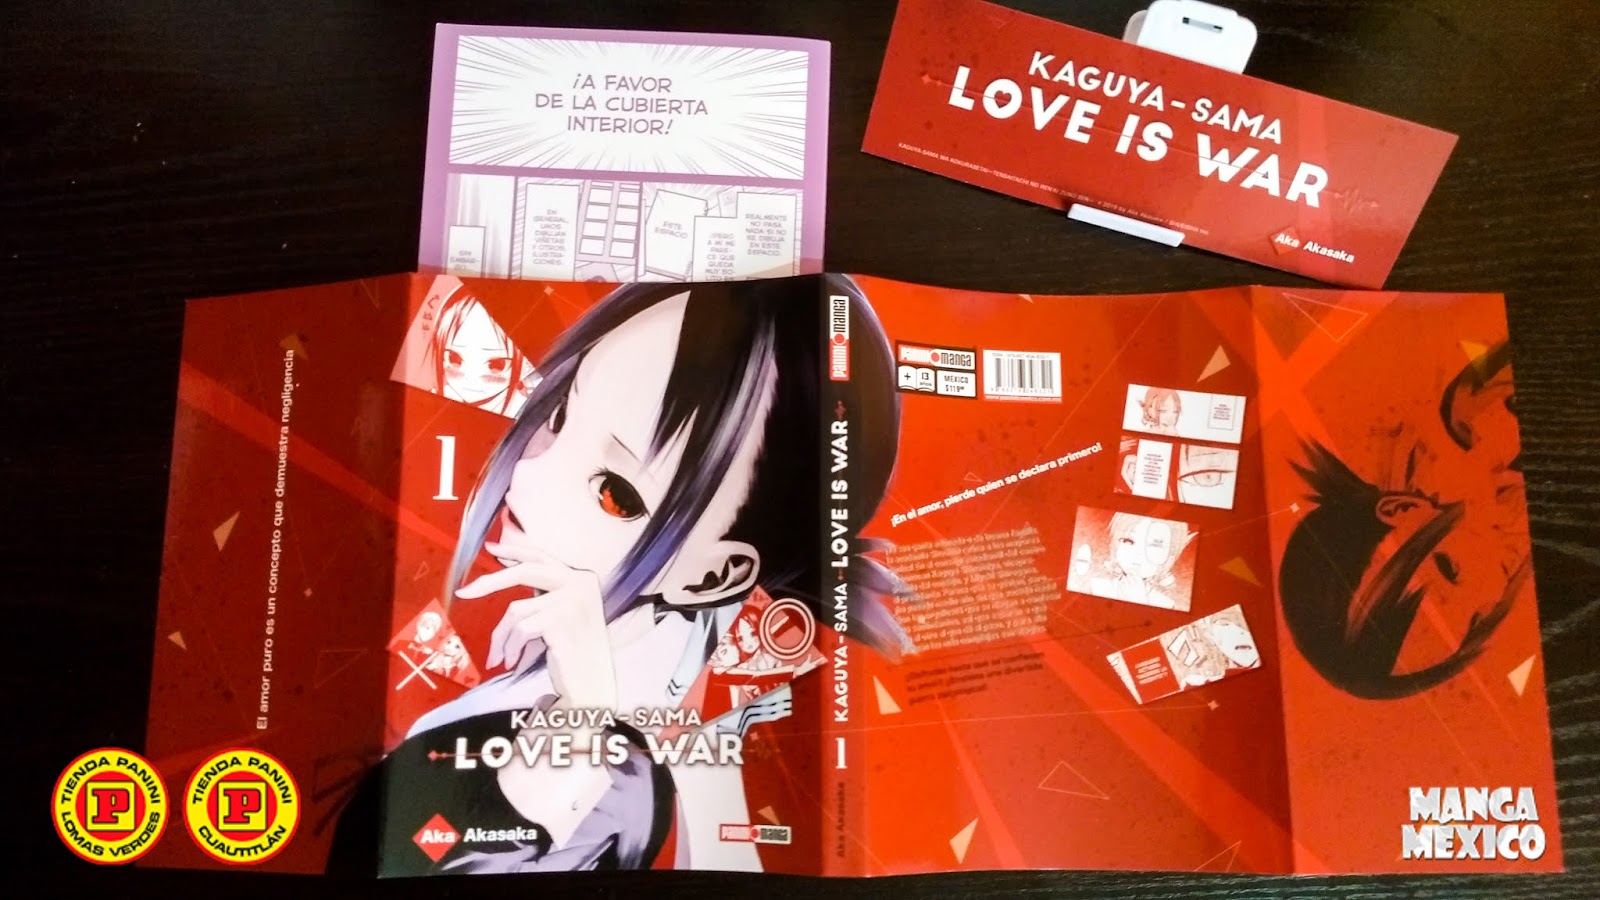 Kaguya-sama: Love Is War -Ultra Romantic- (Doblaje Latino) Kaguya